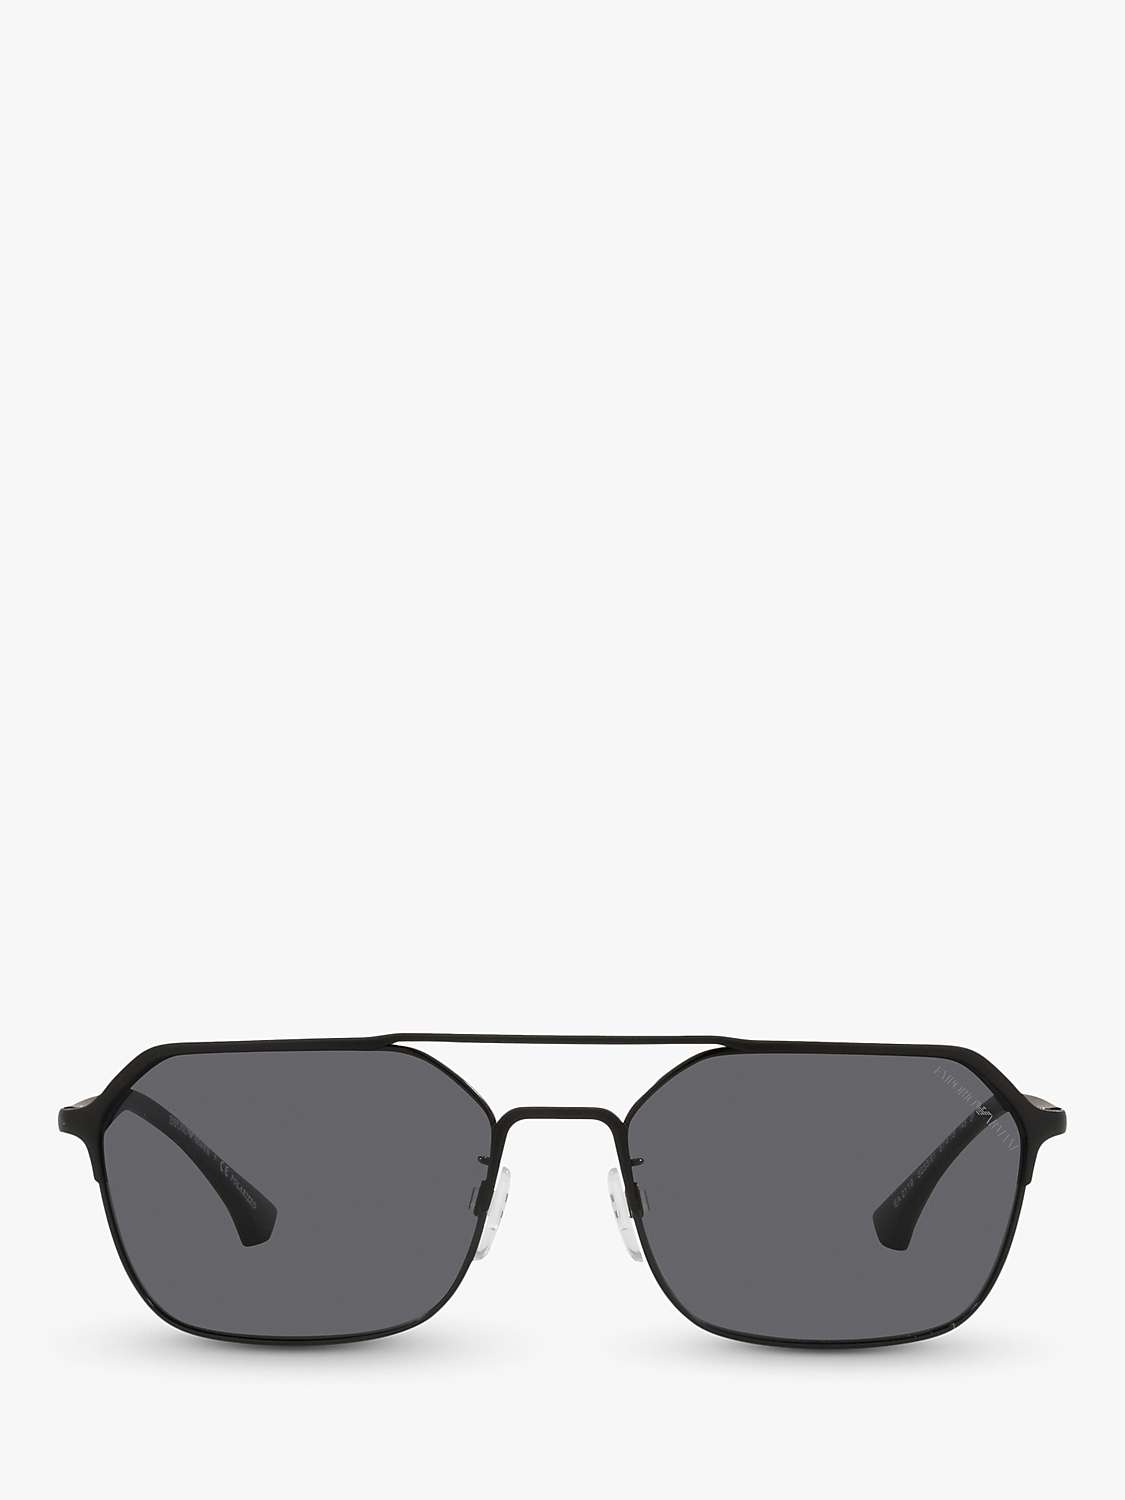 Buy Emporio Armani EA2119 Men's Rectangular Polarised Sunglasses, Matte/Shiny Black Online at johnlewis.com